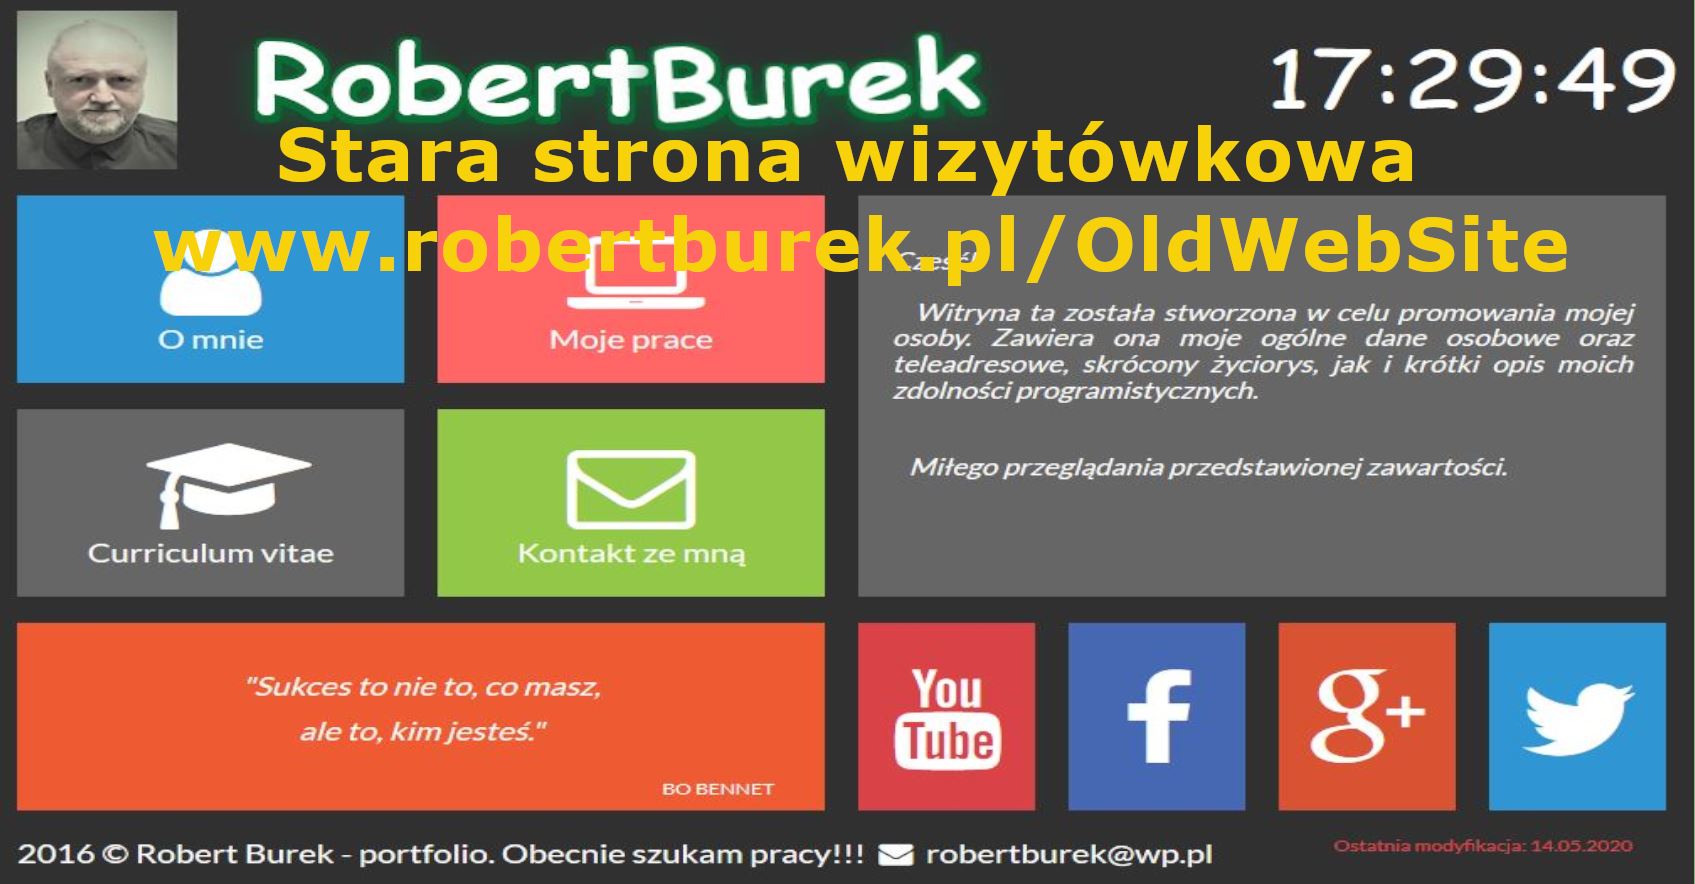 Stara strona wizytówkowa, napisana w HTML, CSS, JavaScript w oparci o wzór Mirosława Zelenta - Pasja Informatyki.